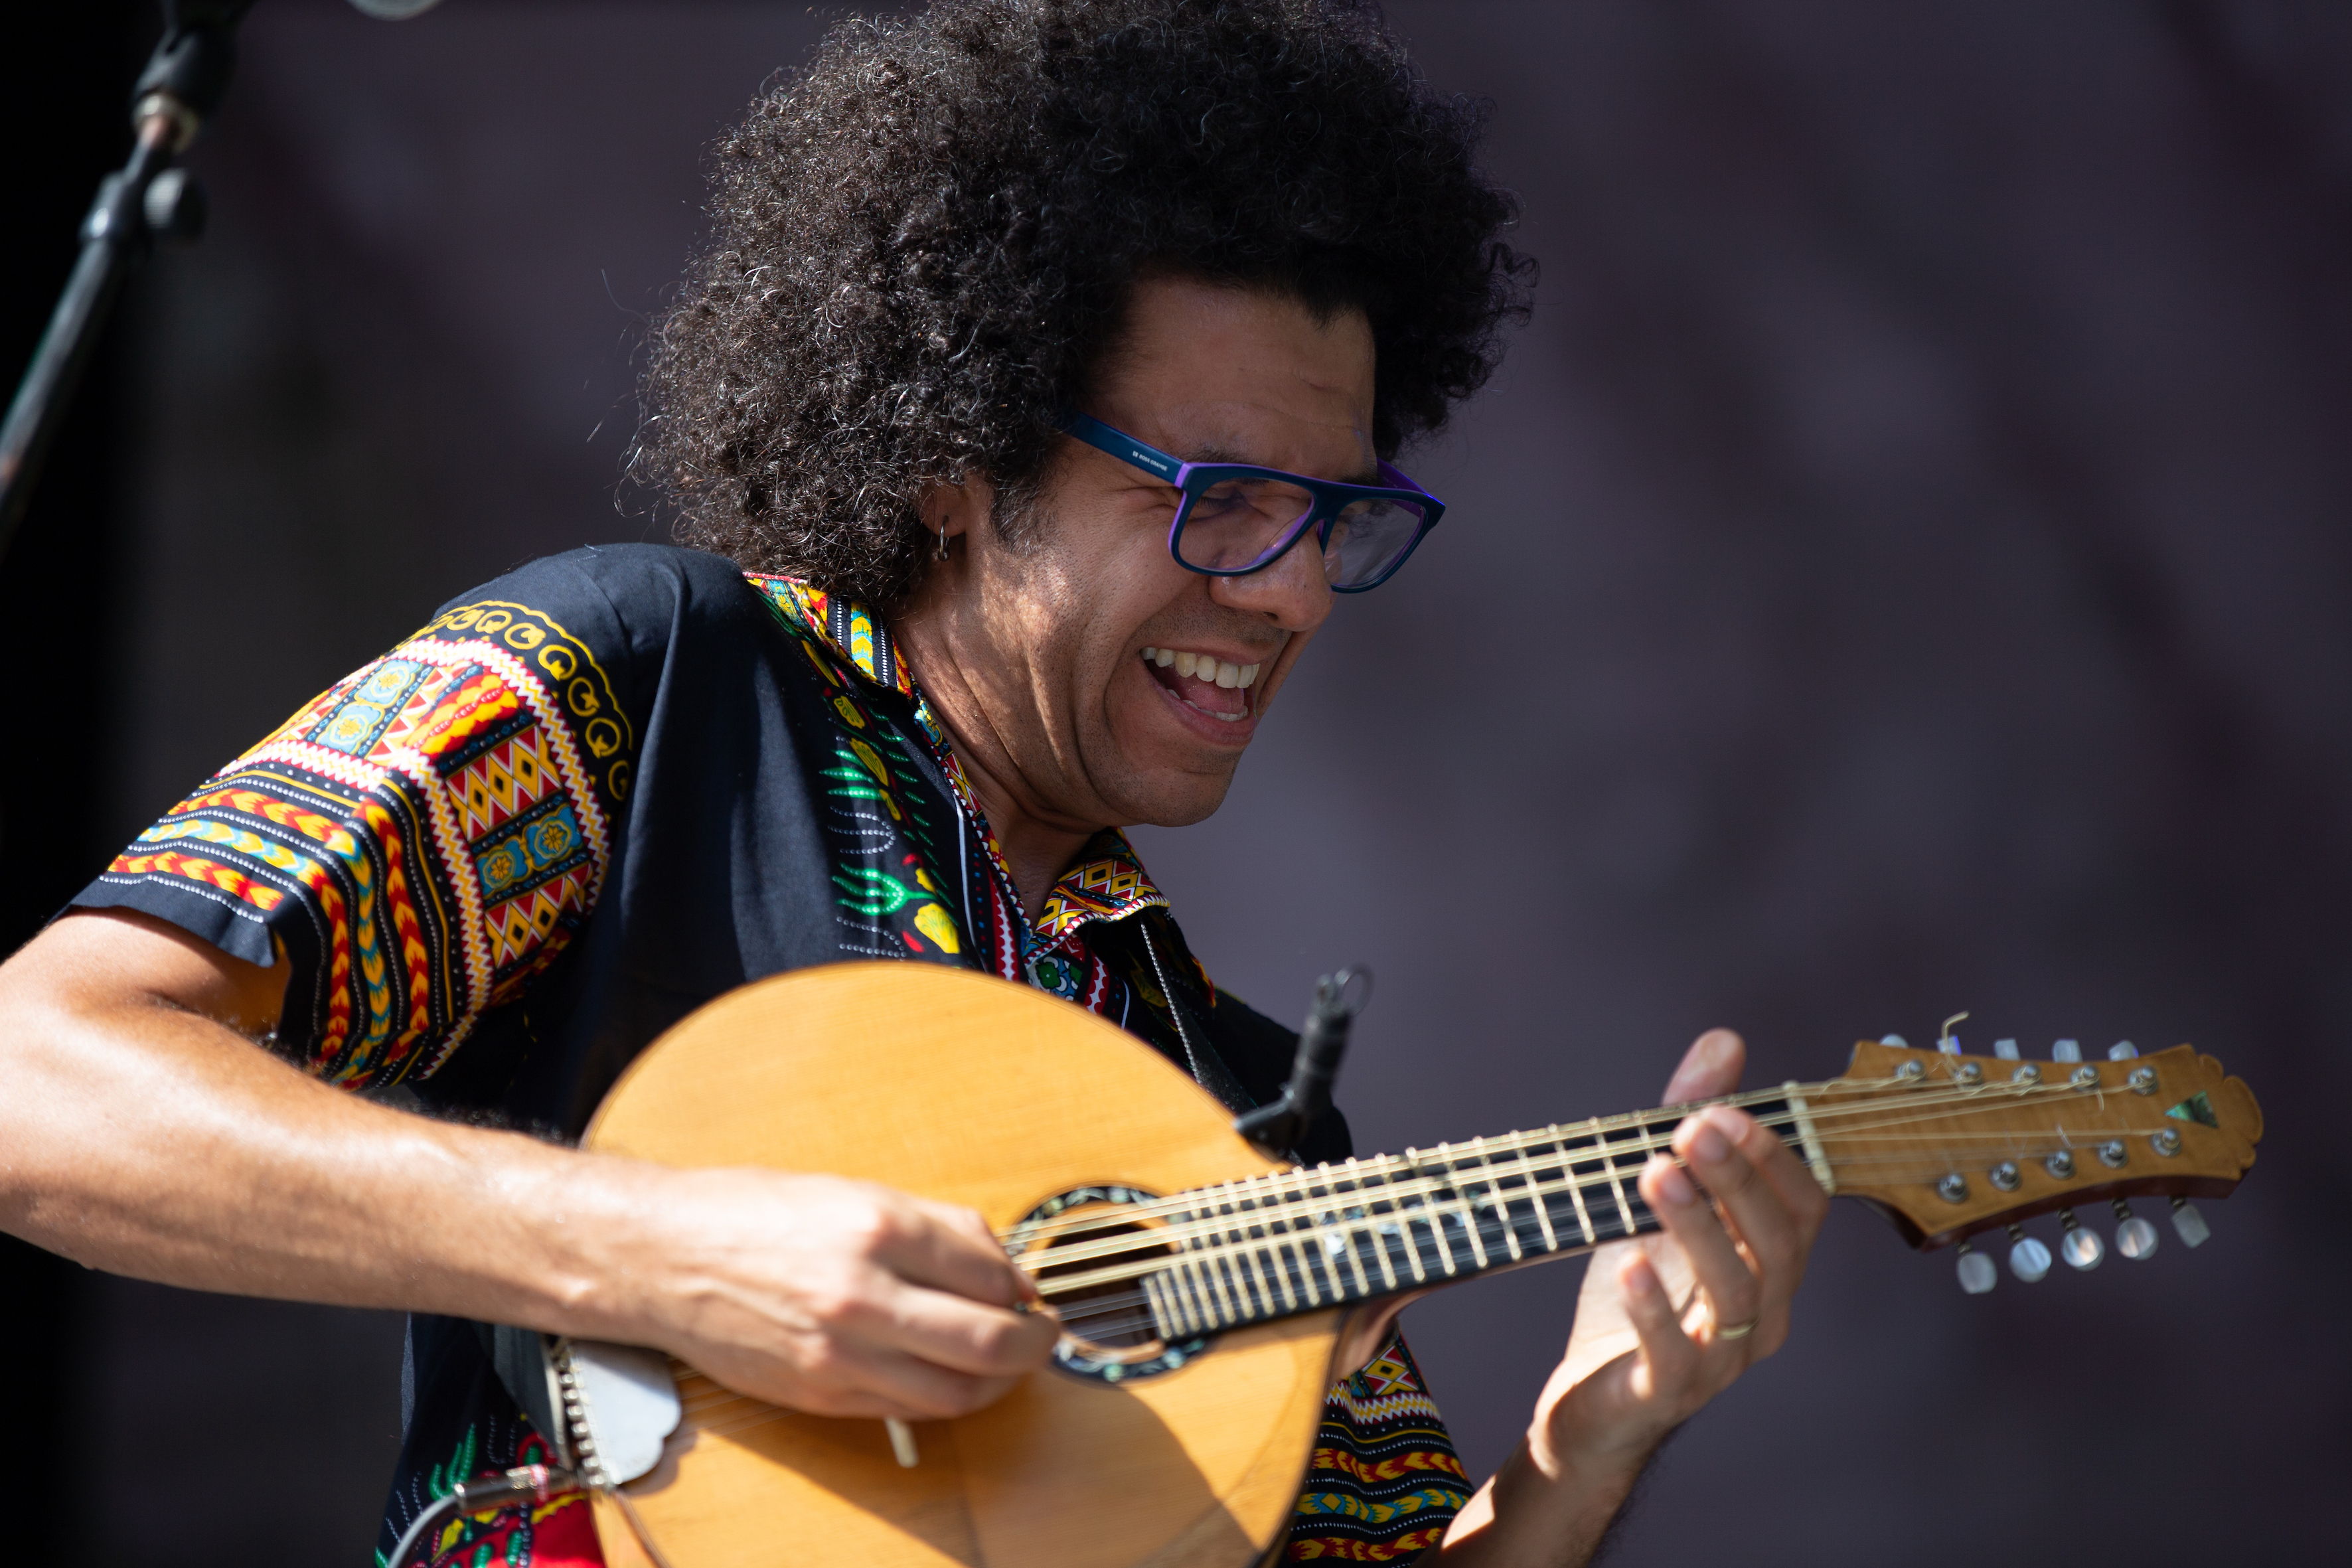 BIZÚ FORTE: Hamilton de Holanda mixa as músicas brasileira e flamenca Você gosta? DEIXE SEU COMENTÁRIO!